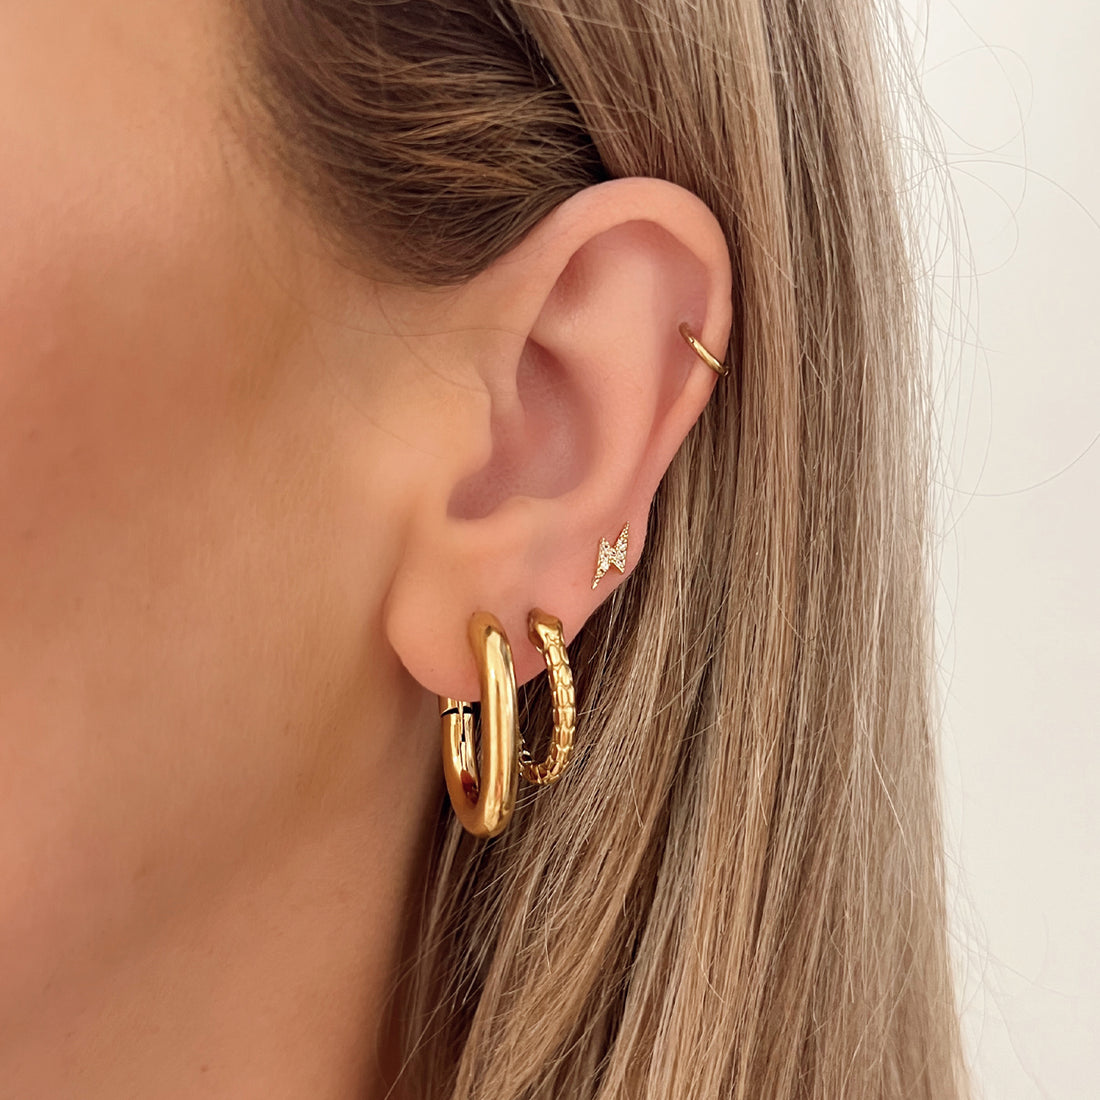 Ovalen oorbel ringen goud. De oorbellen zijn van gold plated stainless steel en zijn waterproof. De oorbellen sluiten met een click systeem. Afmetingen: 25 mm.